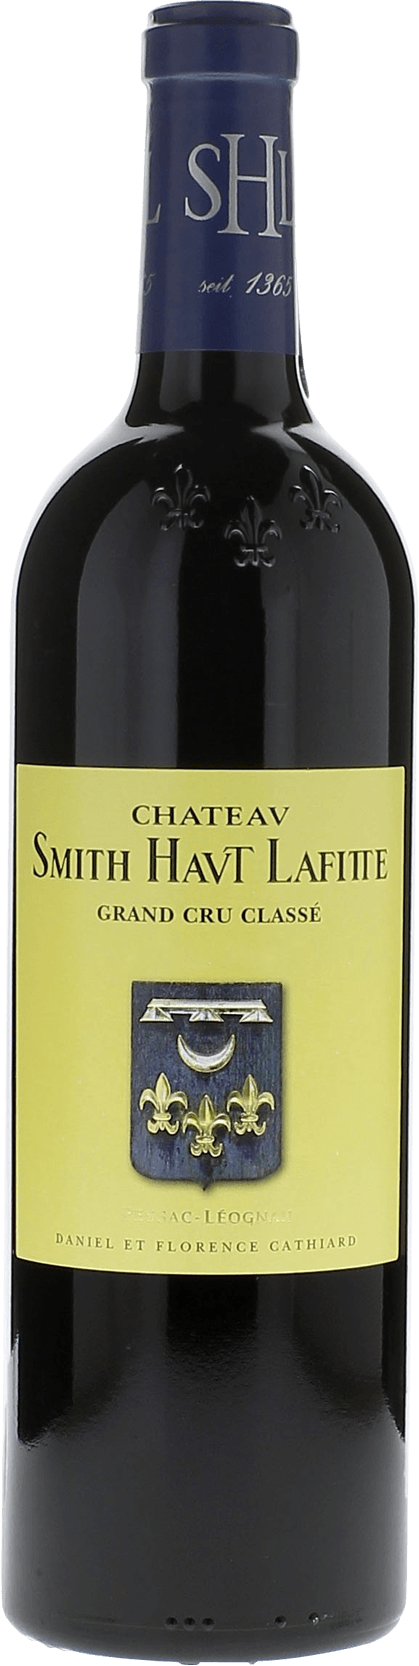 Smith haut lafitte 1975 Grand Cru Class Graves, Bordeaux rouge